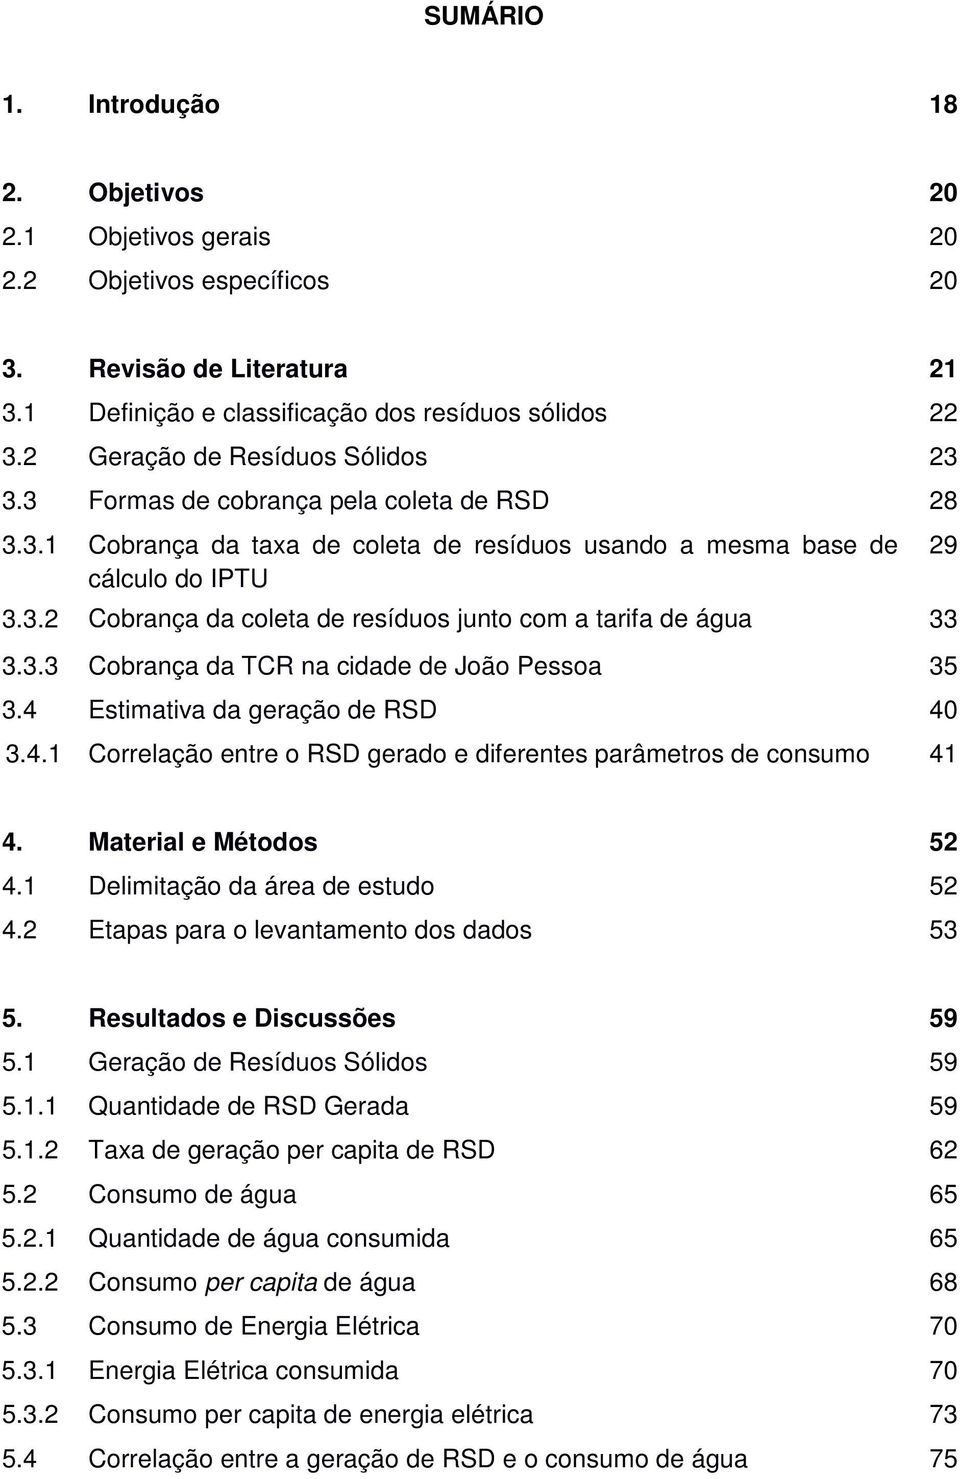 3.3 Cobrança da TCR na cidade de João Pessoa 35 3.4 Estimativa da geração de RSD 40 3.4.1 Correlação entre o RSD gerado e diferentes parâmetros de consumo 41 29 4. Material e Métodos 52 4.